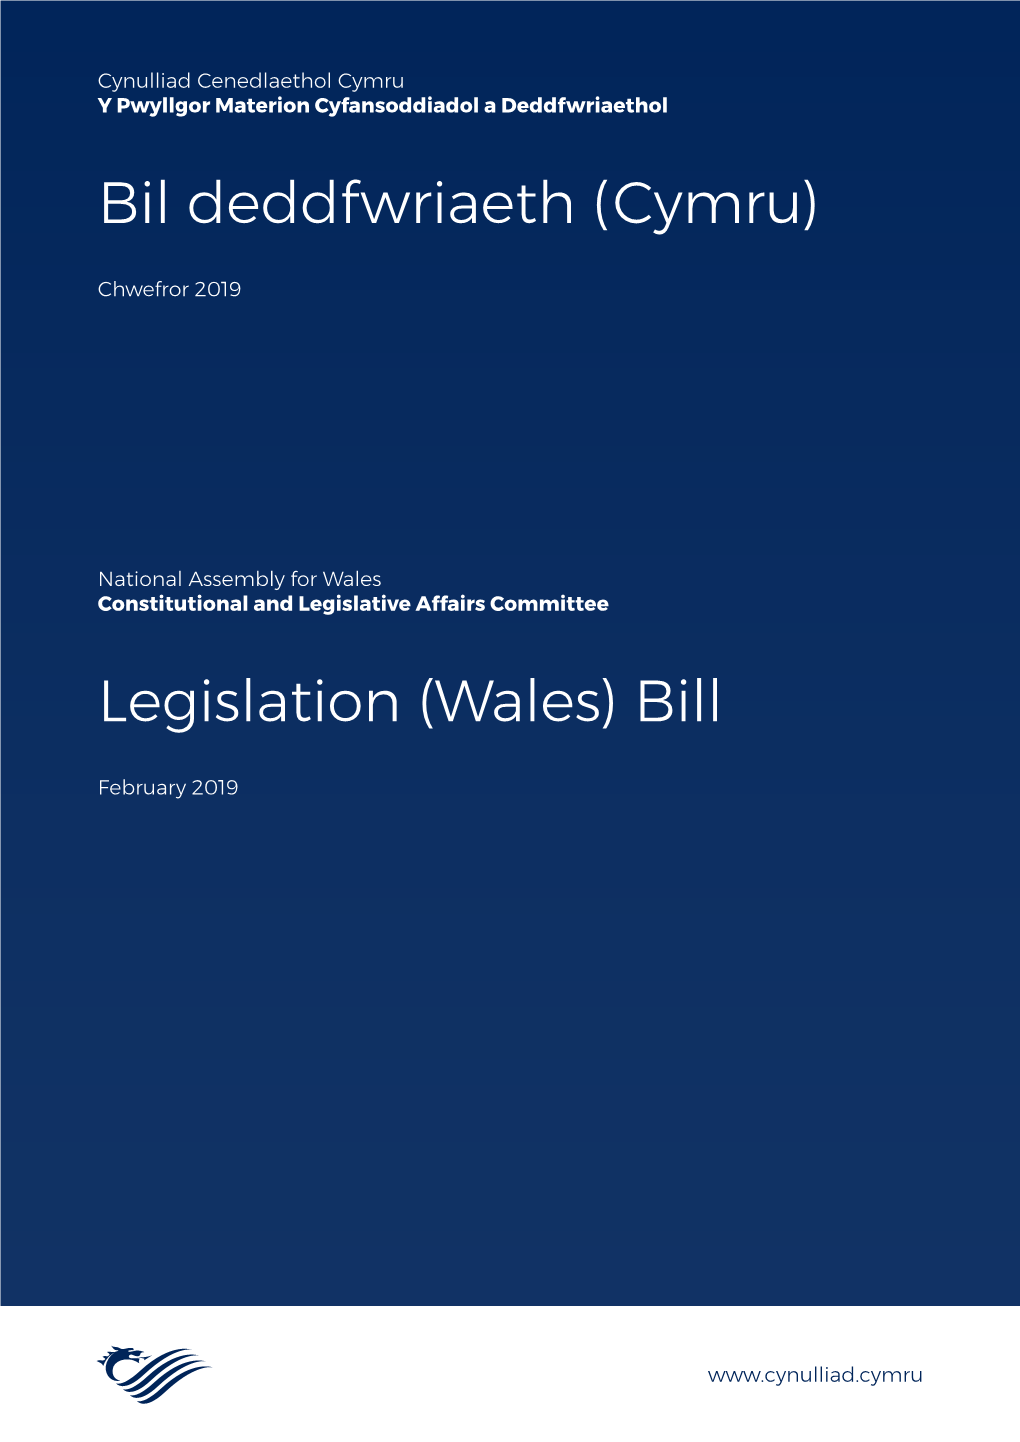 Legislation (Wales) Bill